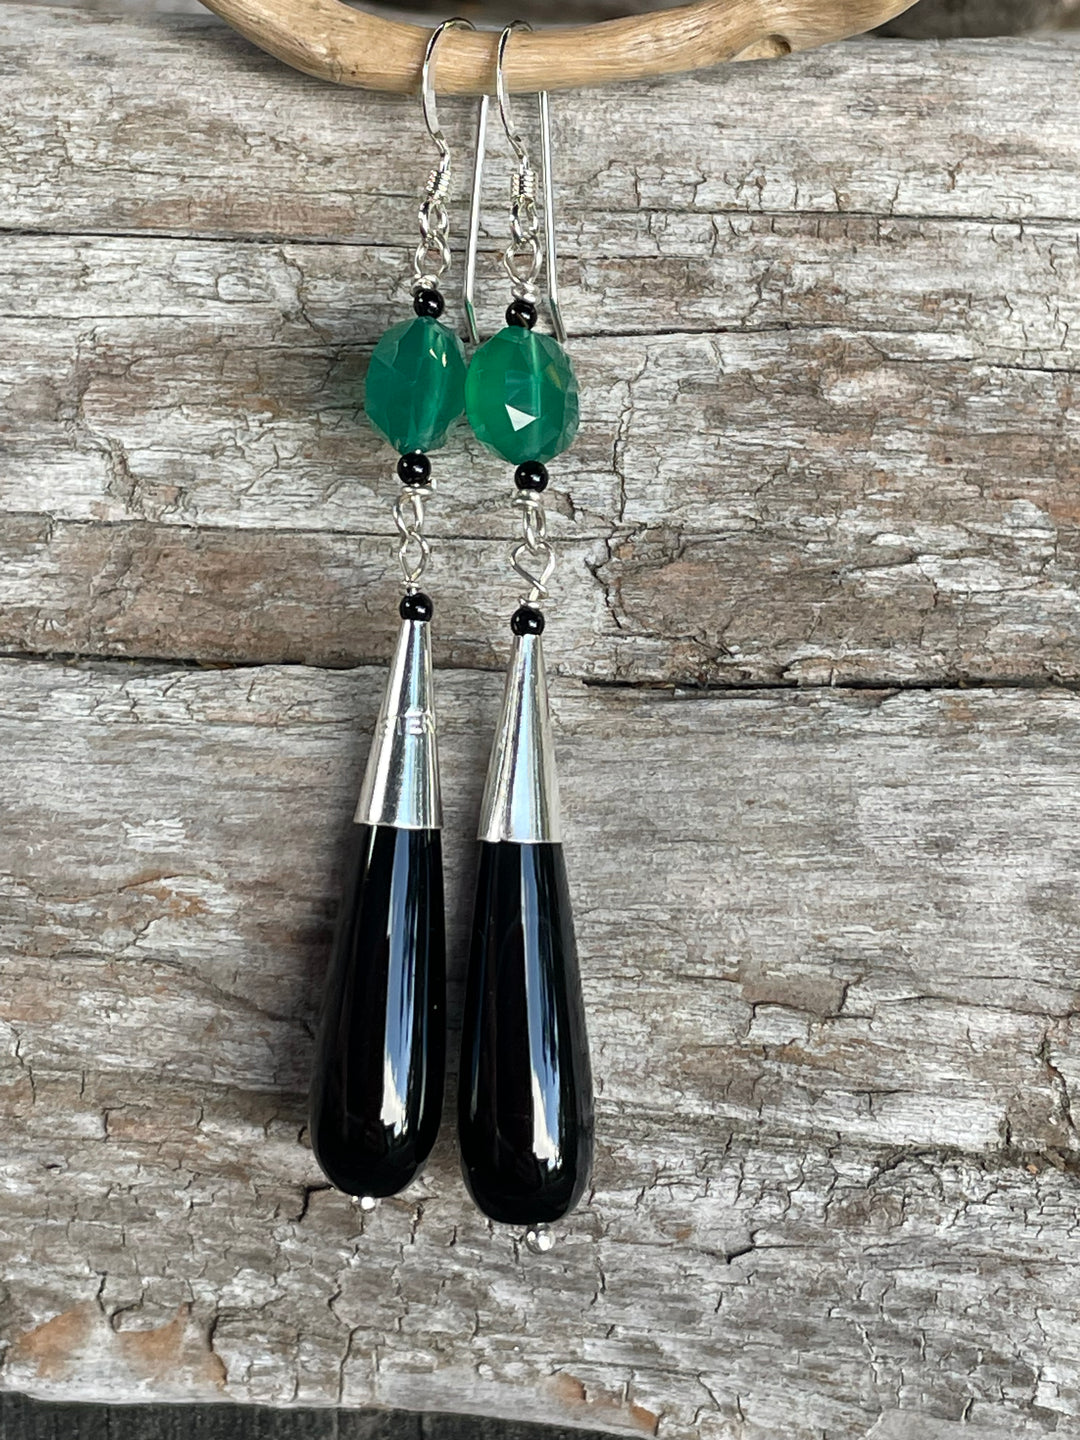 Black onyx and green agate earrings